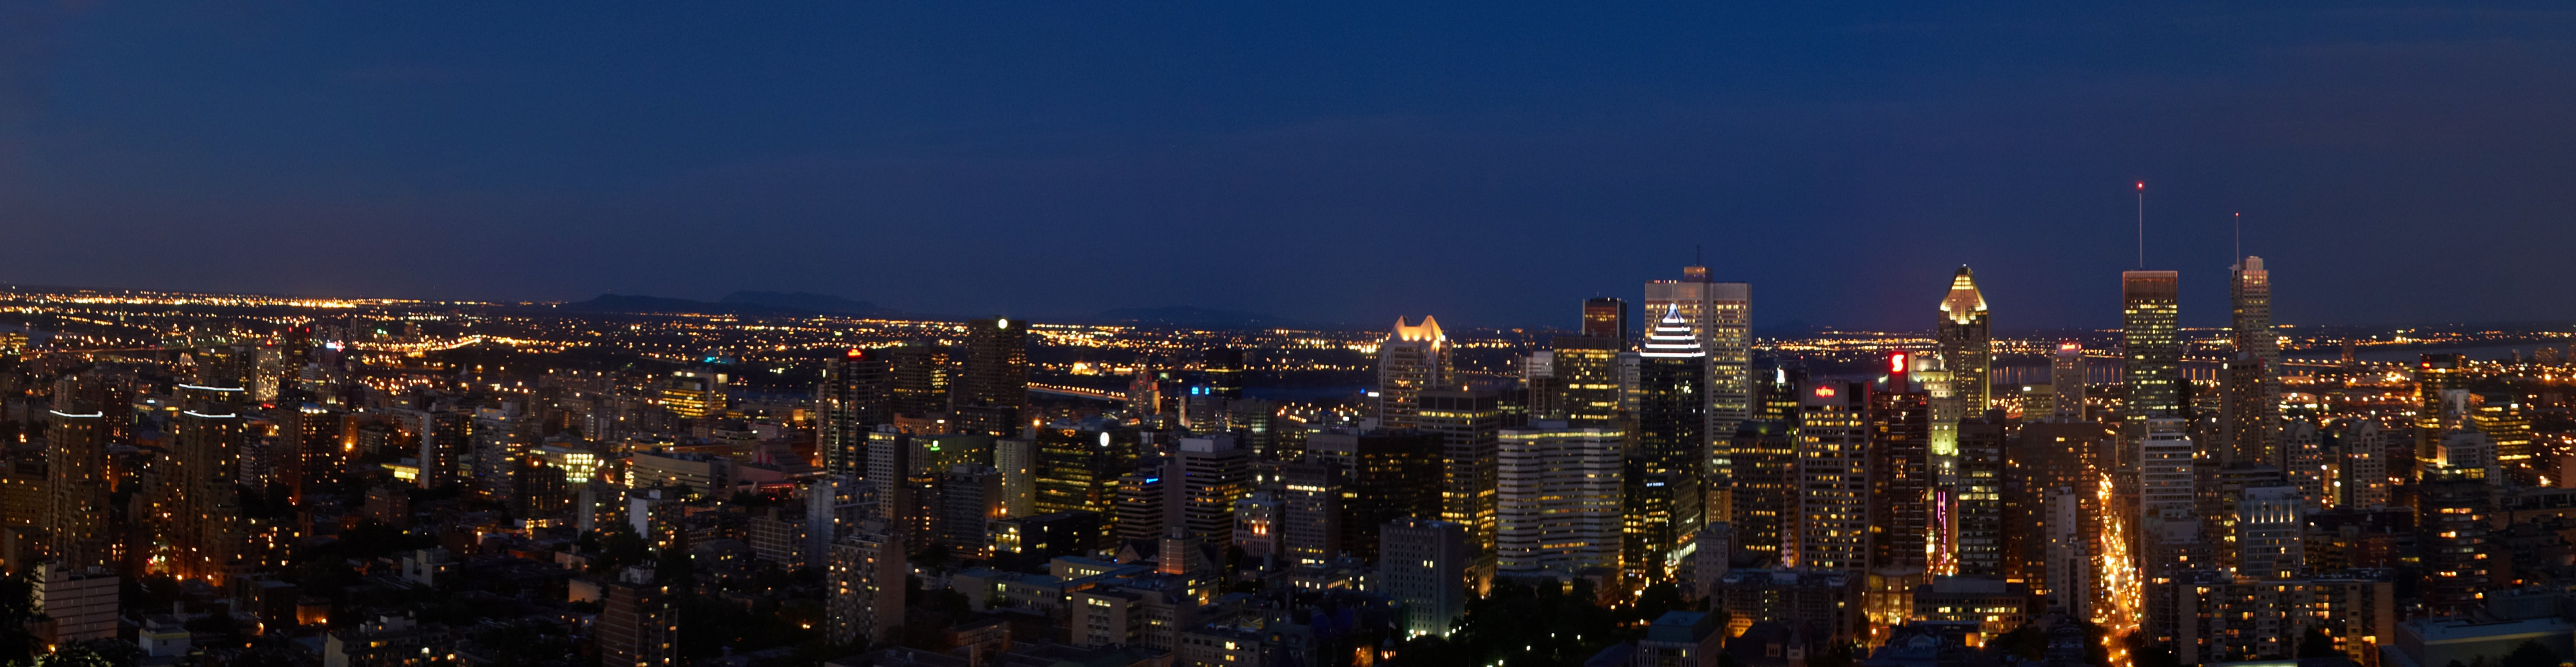 Foto de la ciudad de Montreal en la noche